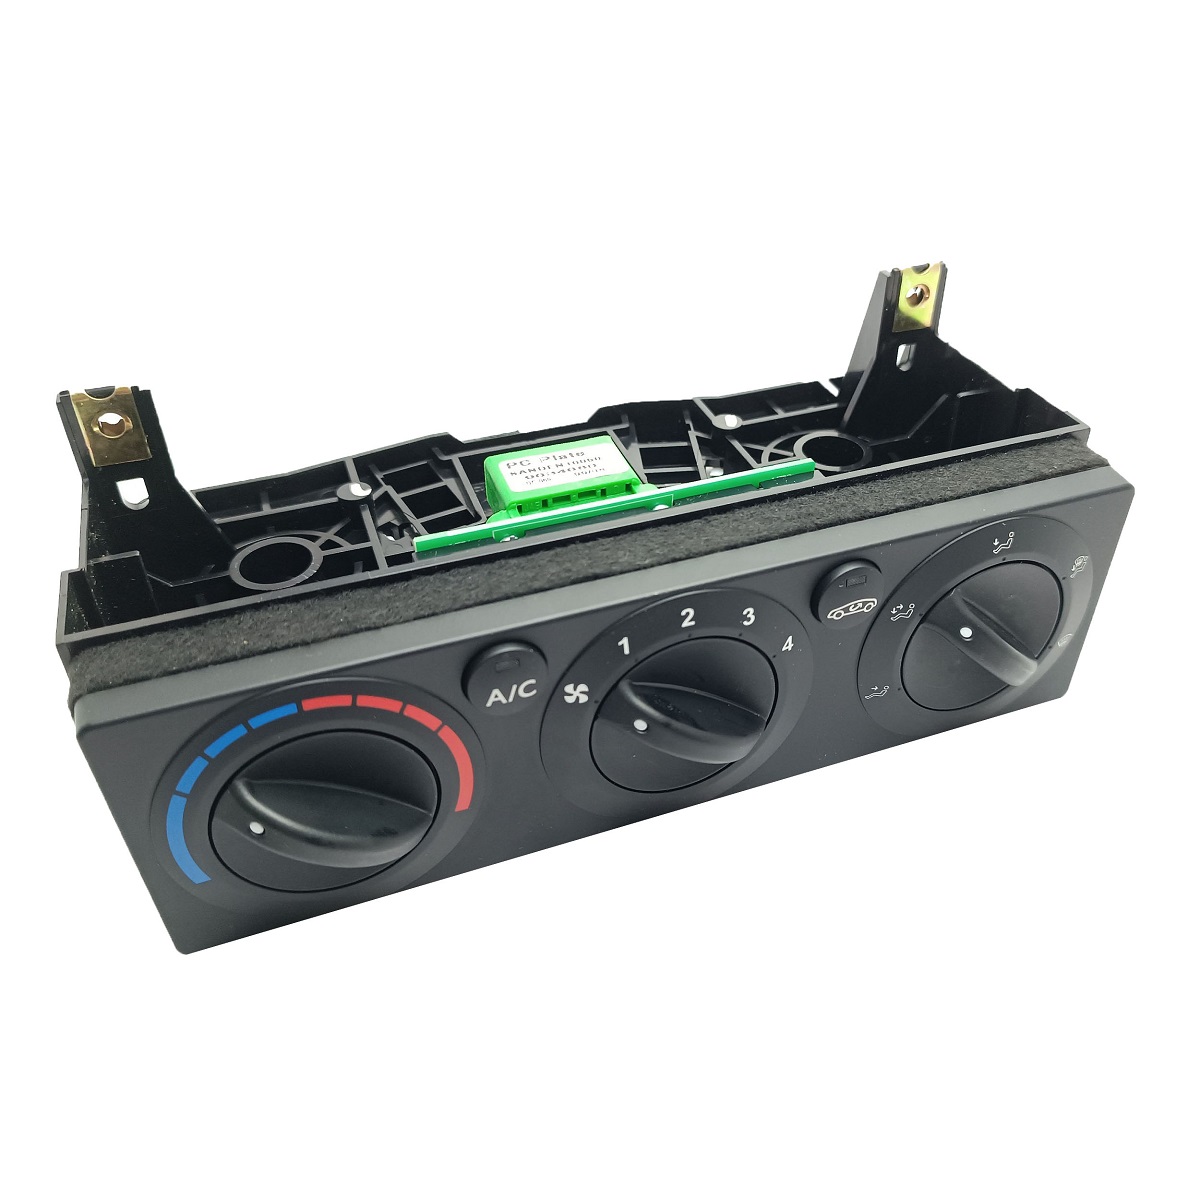 کنترل پنل بخاری خودرو ایساکو کد 22901026 مناسب برای سمند